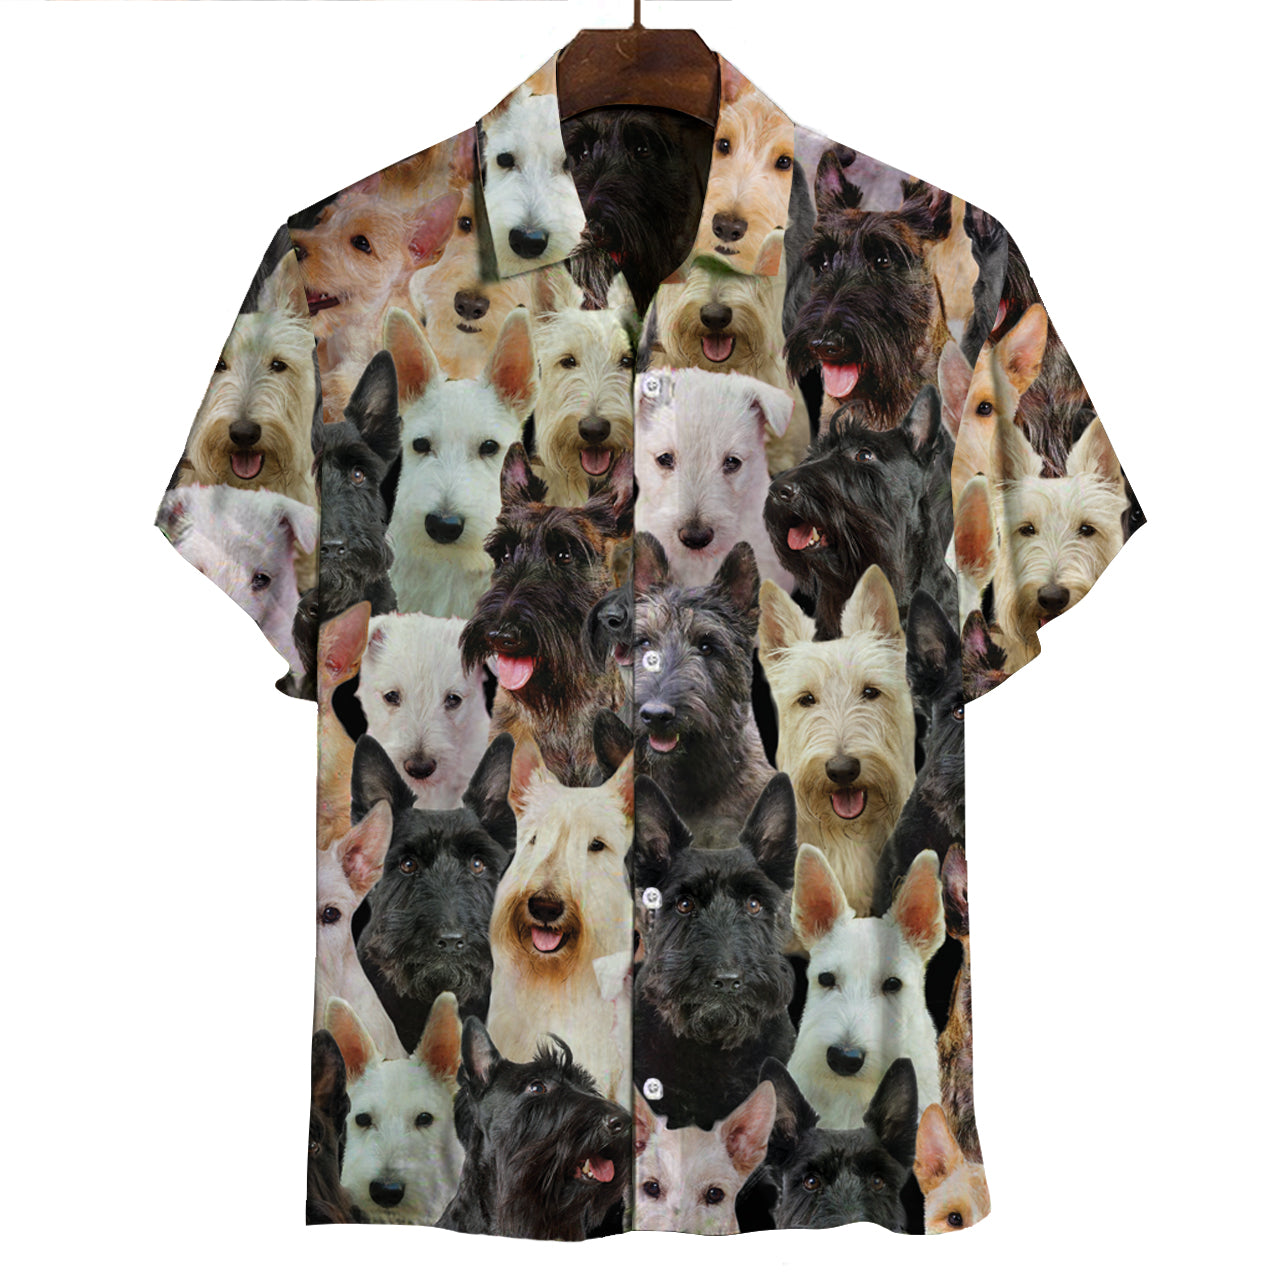 Sie werden einen Haufen schottischer Terrier haben - Shirt V1